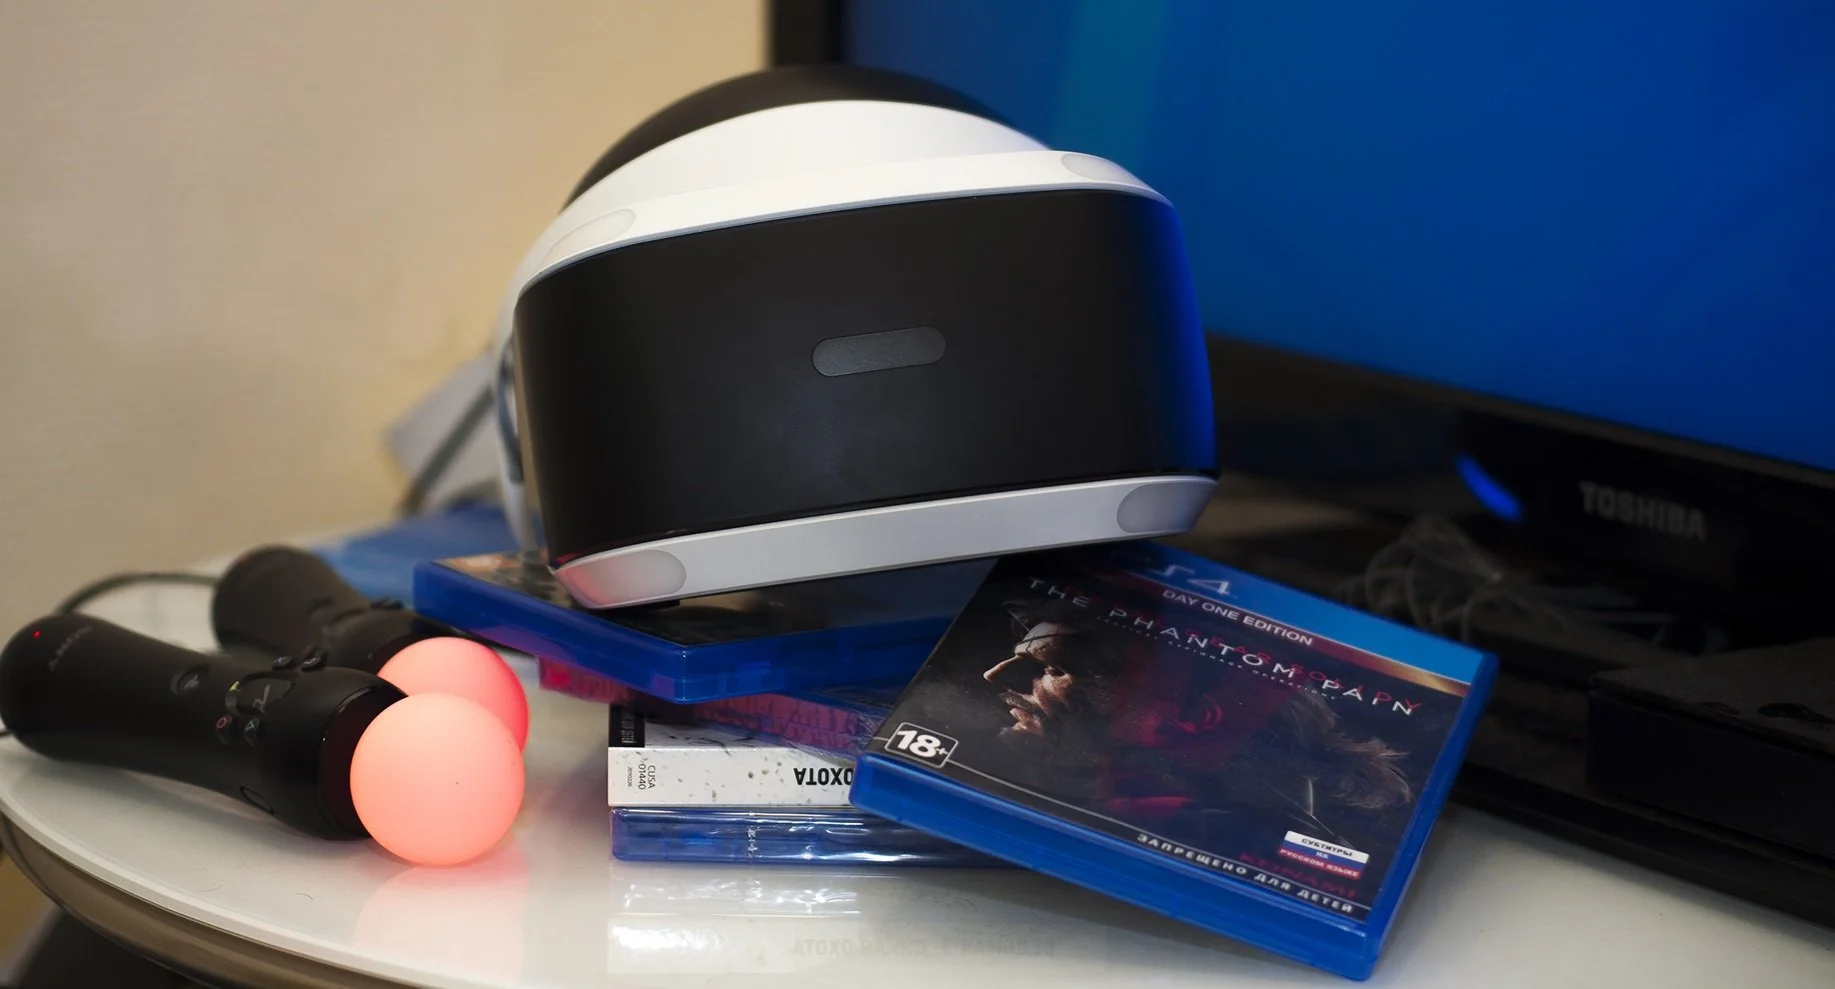 Сегодня к нам в офис приехала долгожданная посылка — шлем PlayStation VR и несколько игр из стартовой линейки устройства. Мы распаковали коробку, изучили ее содержимое и окунулись (некоторые впервые) в пучины виртуальной реальности от Sony.